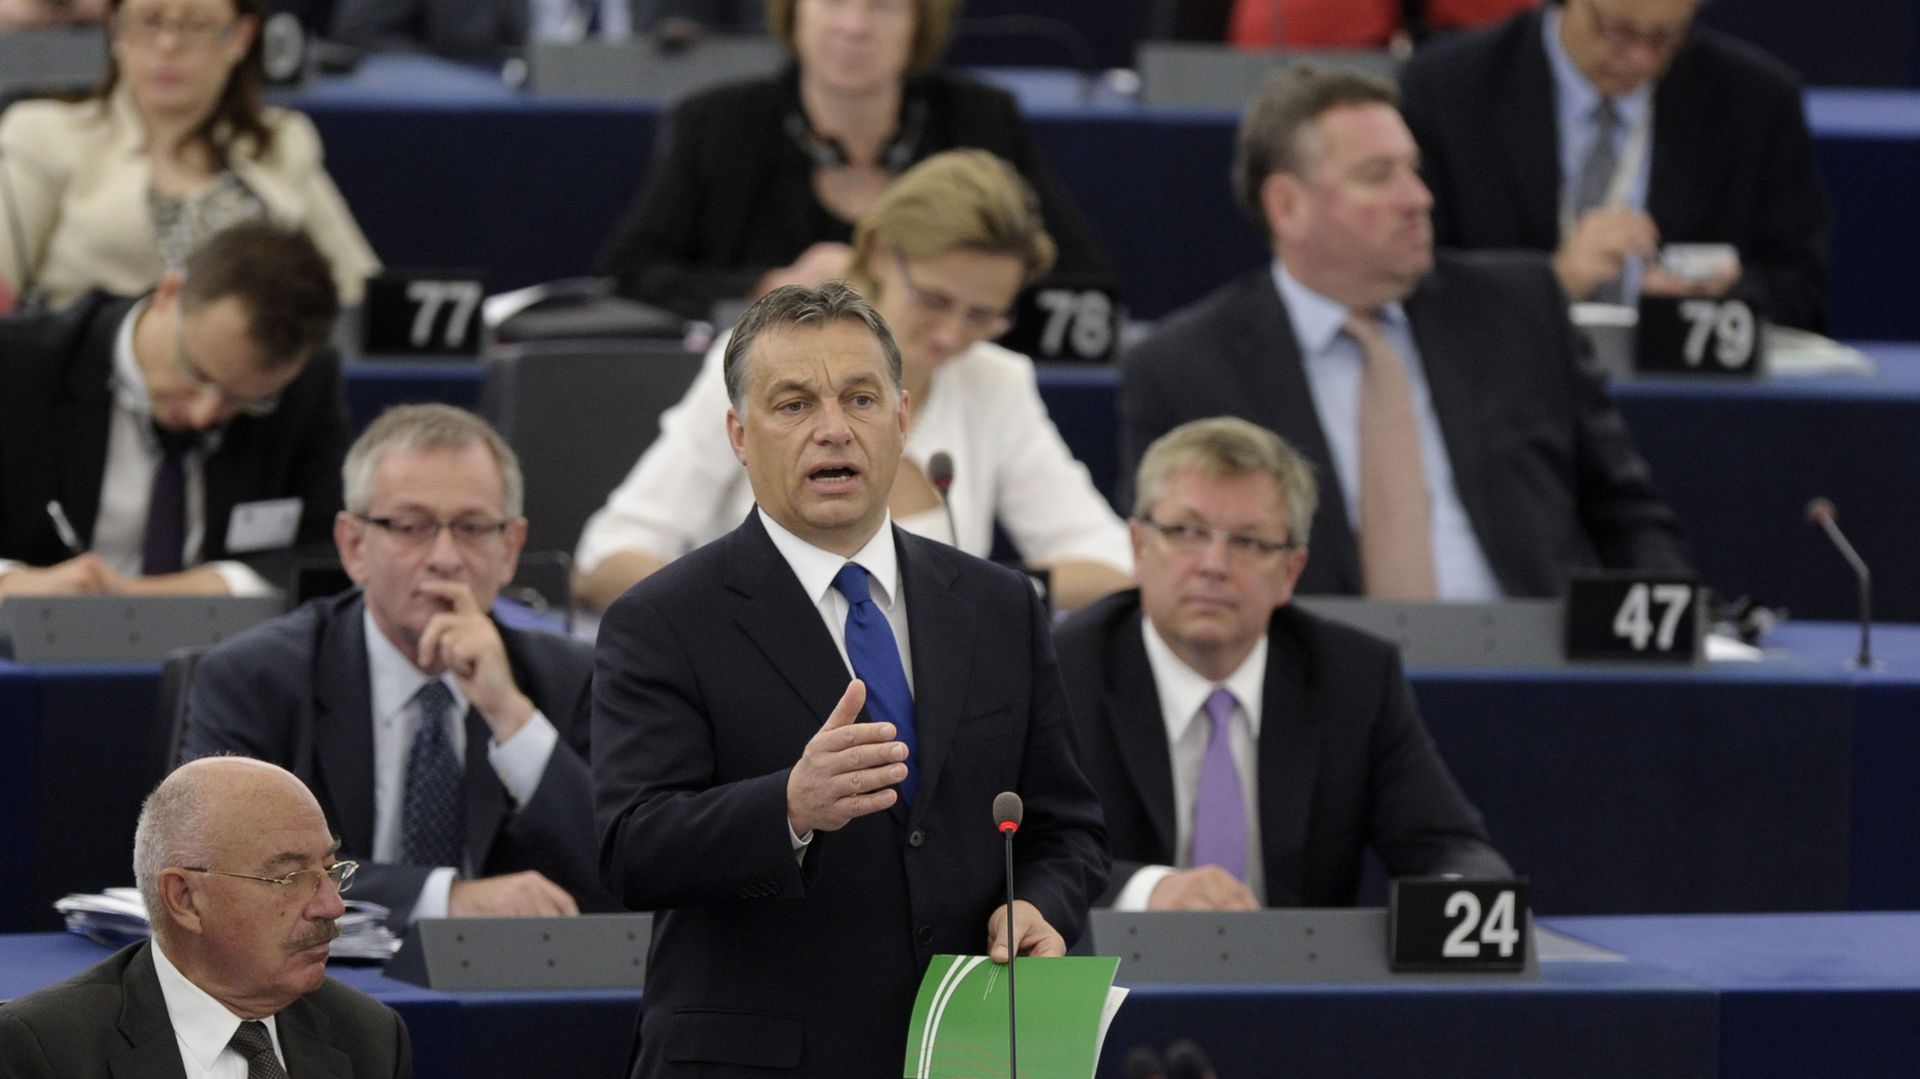 Le Premier ministre hongrois Viktor Orban s'exprimant devant le Parlement européen